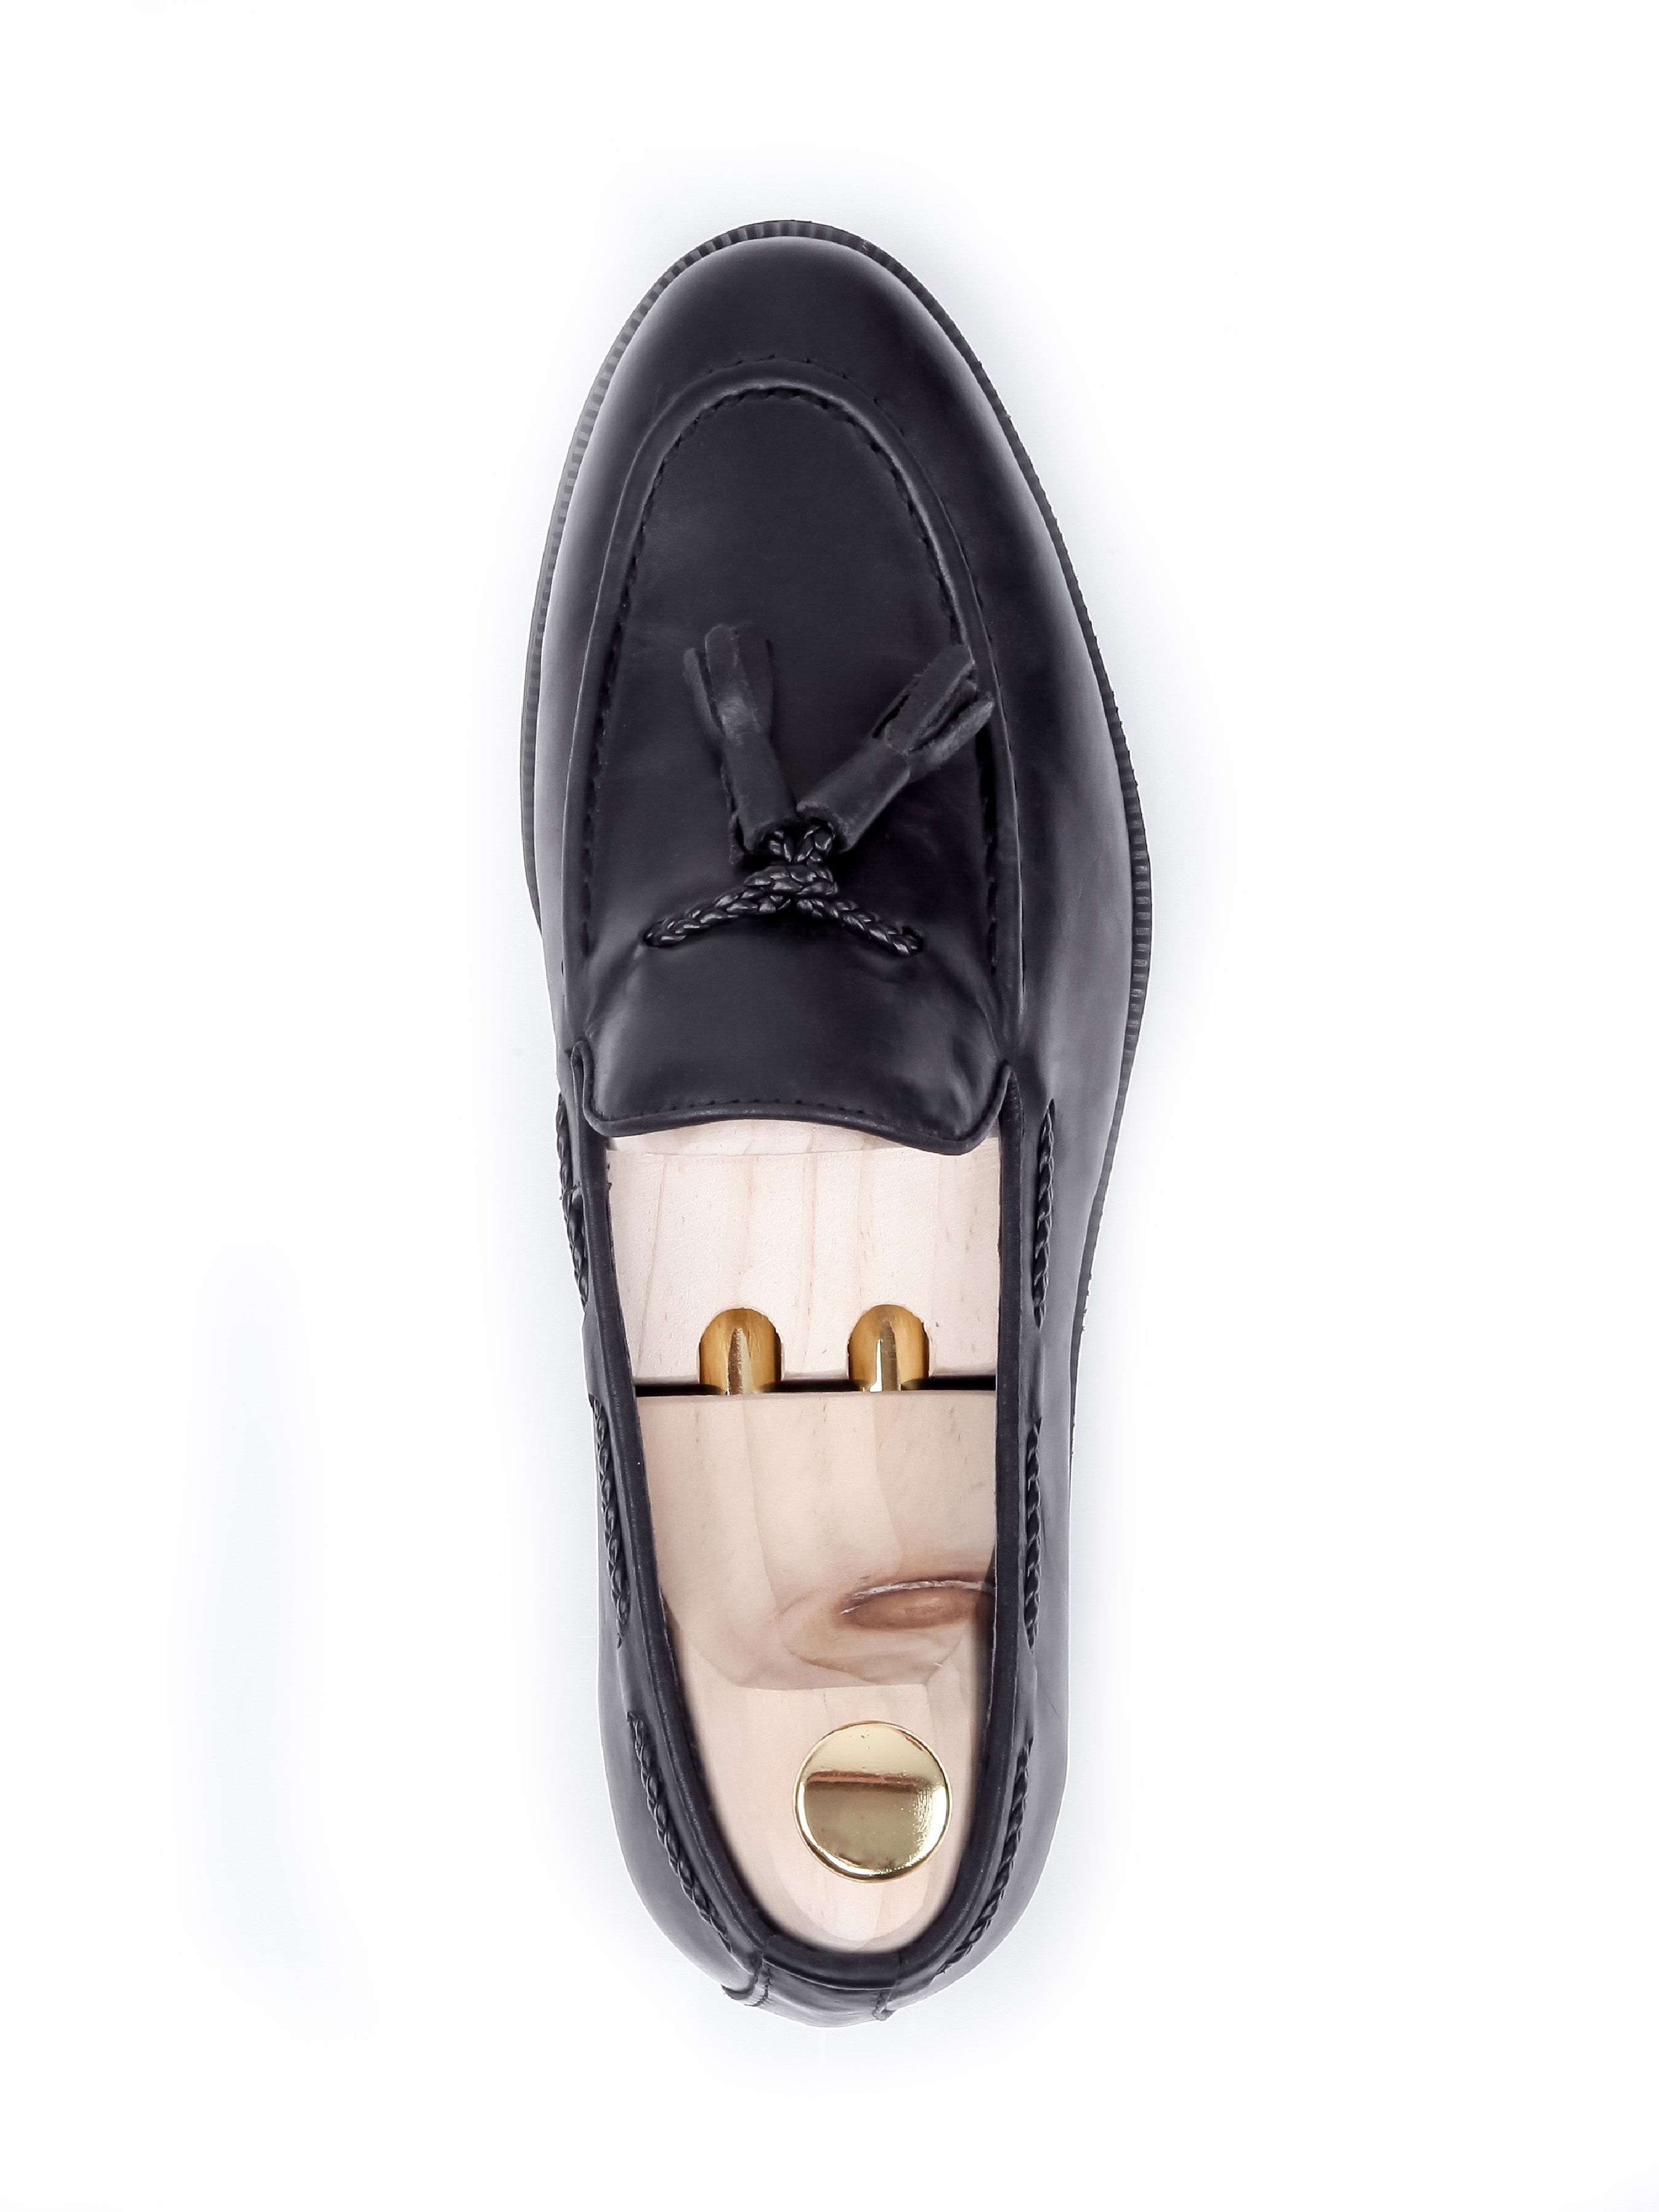 Tassel Loafer - Black Leather (Crepe Sole) - Zeve Shoes